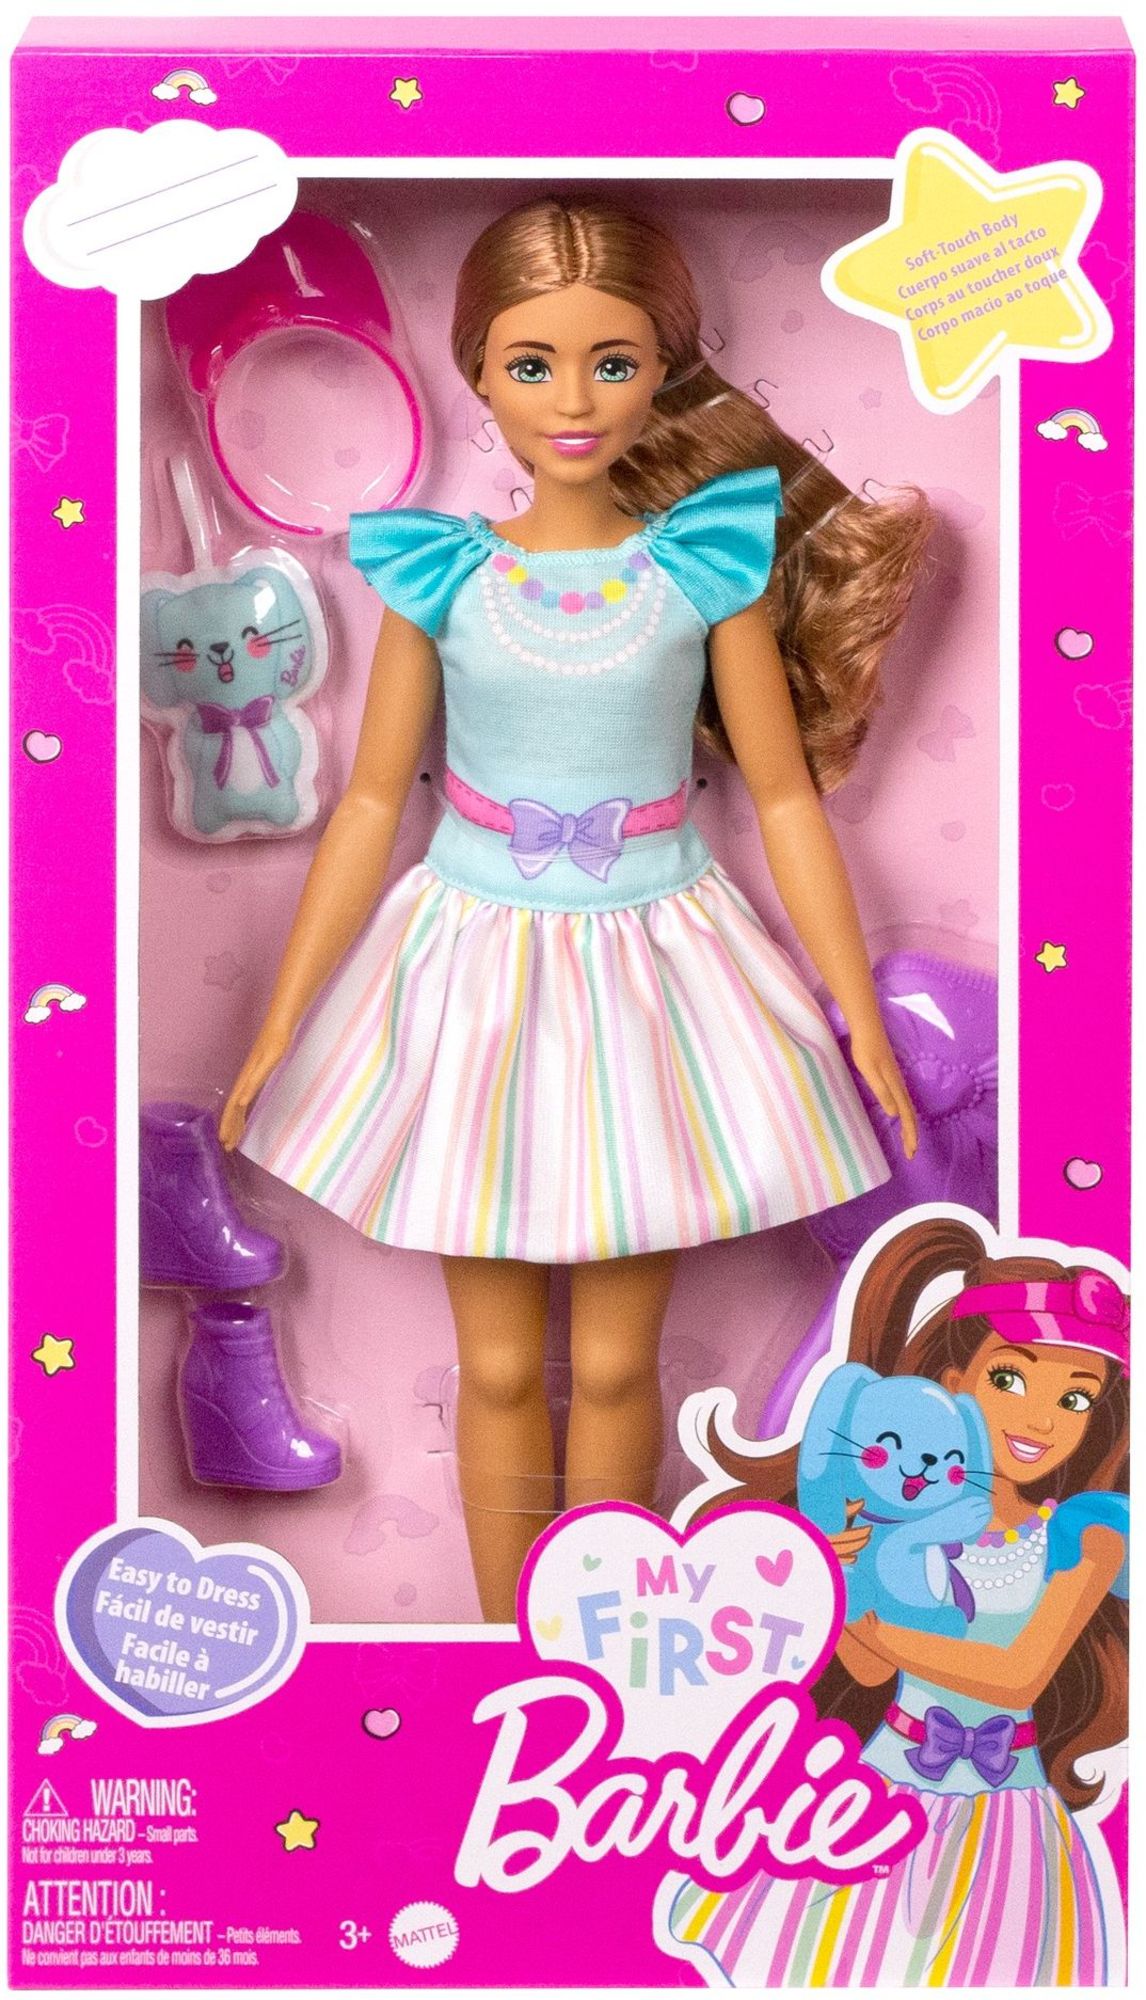 Barbie Barbie - My Barbie - First Spielwaren Teresa kaufen Puppe\'